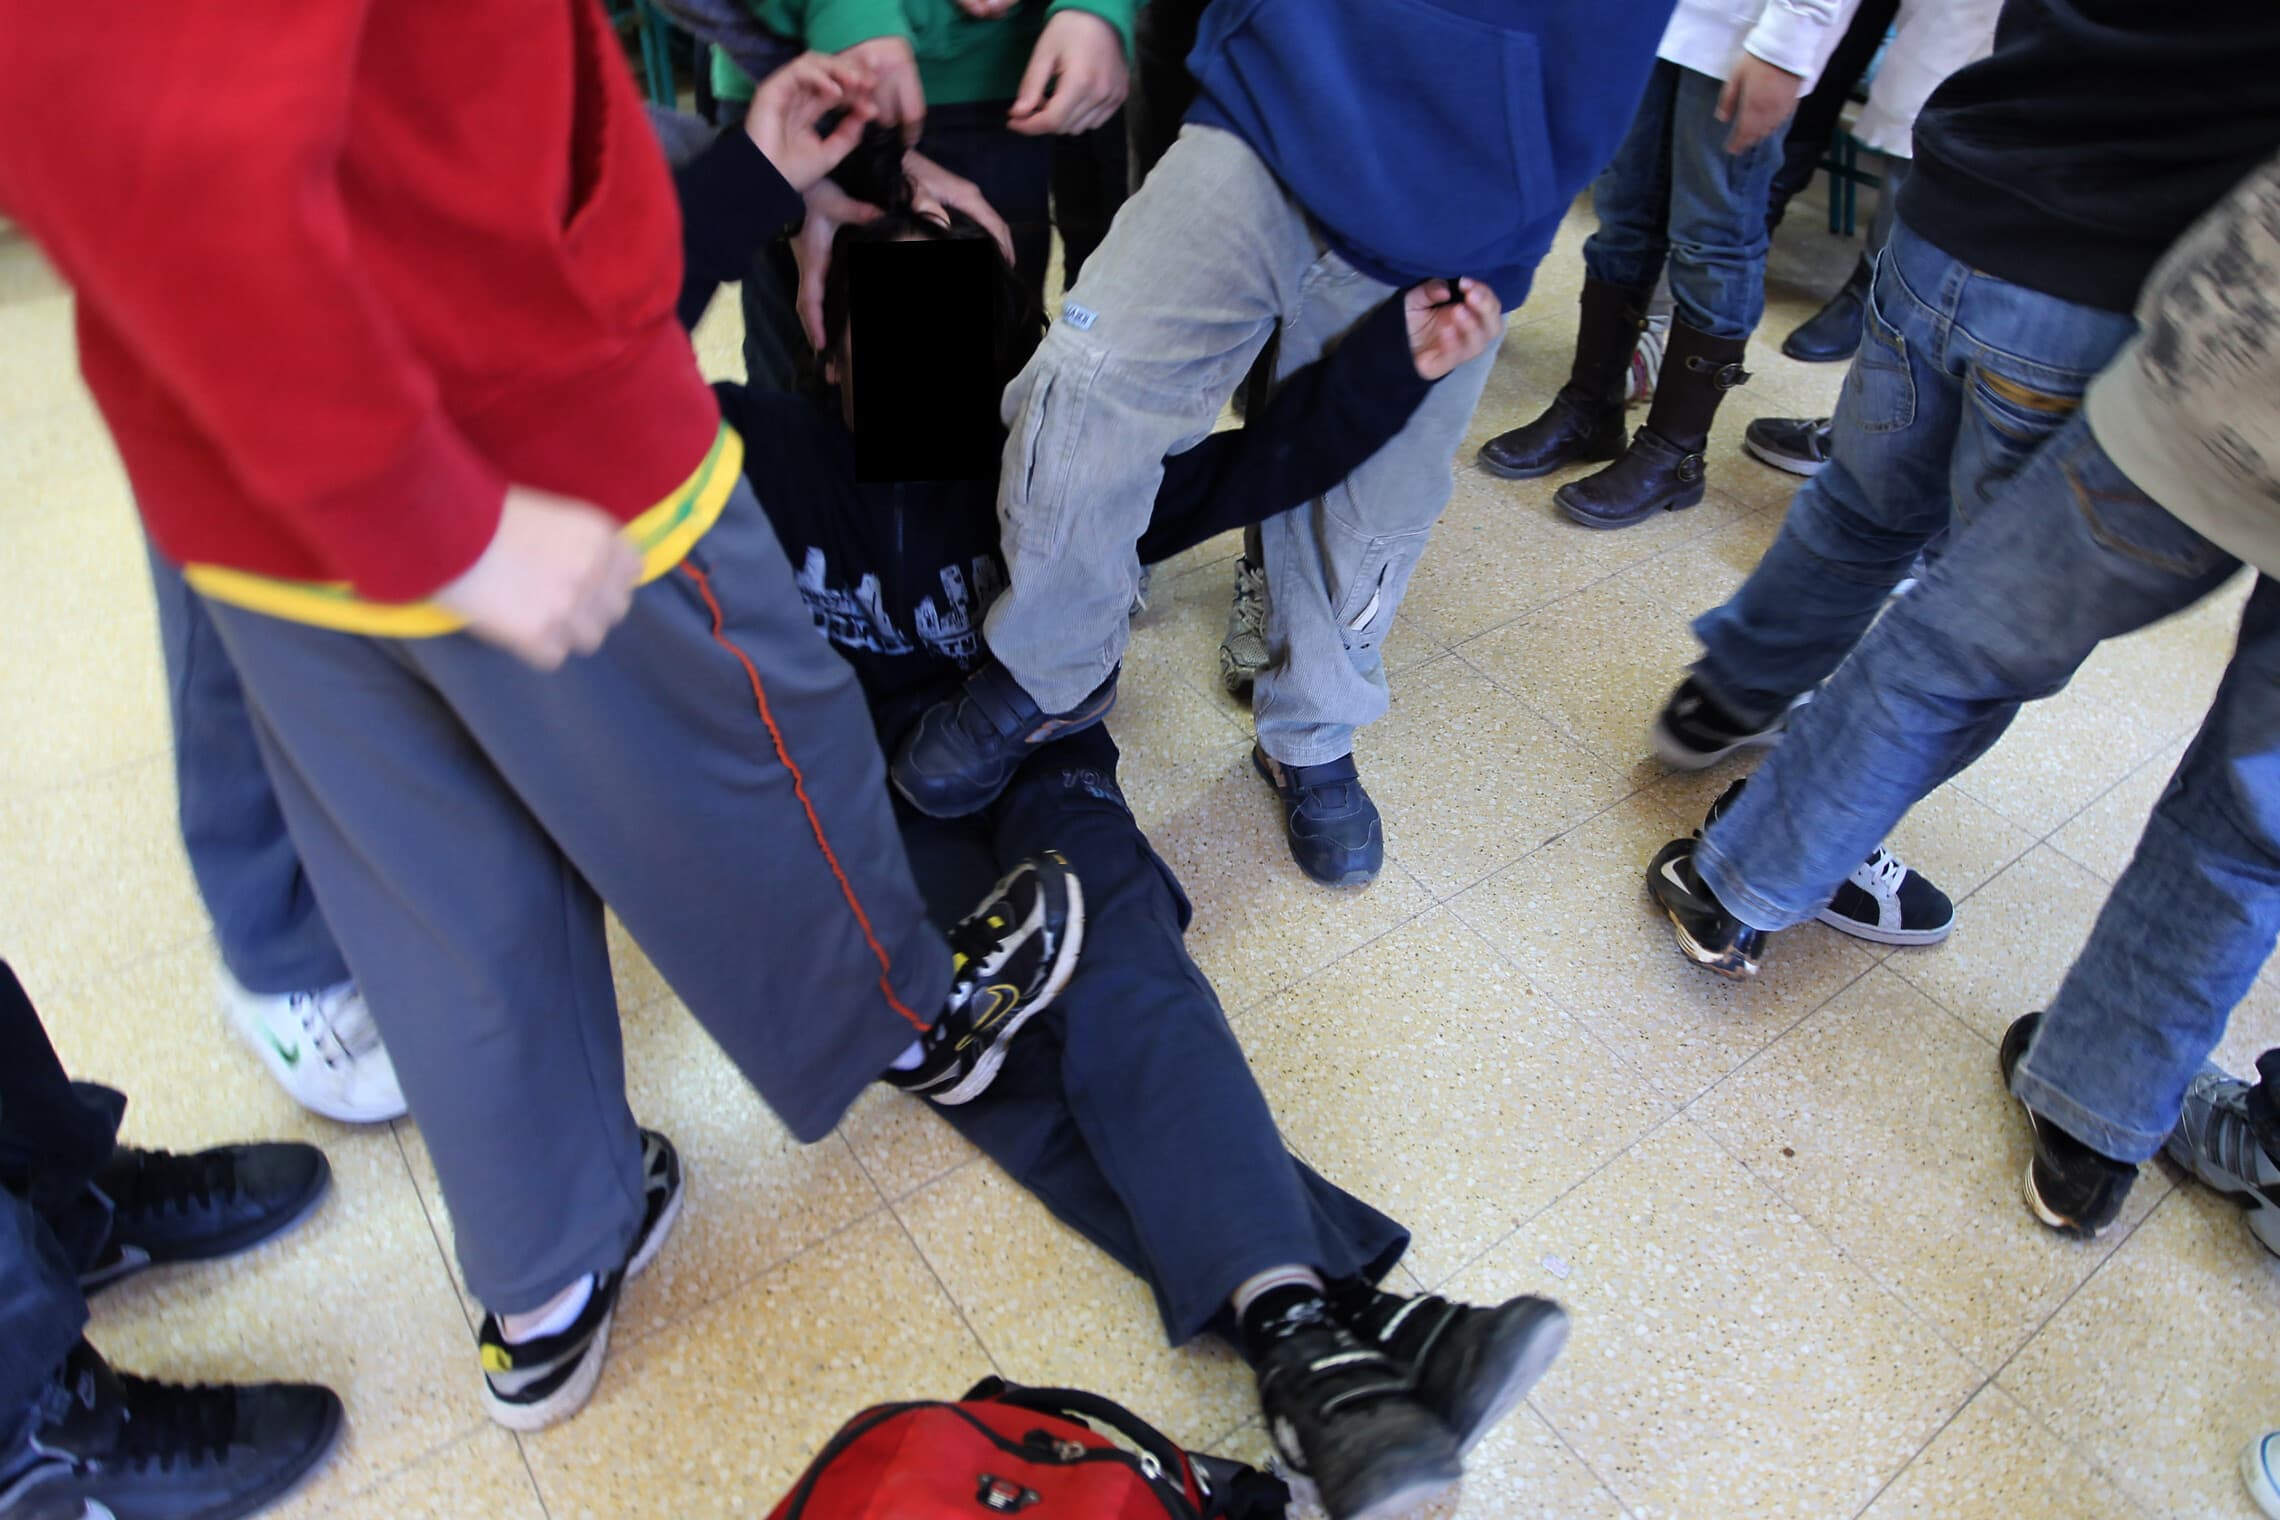 אלימות בבית ספר בישראל, תמונת אילוסטרציה (צילום: נתי שוחט, פלאש 90)